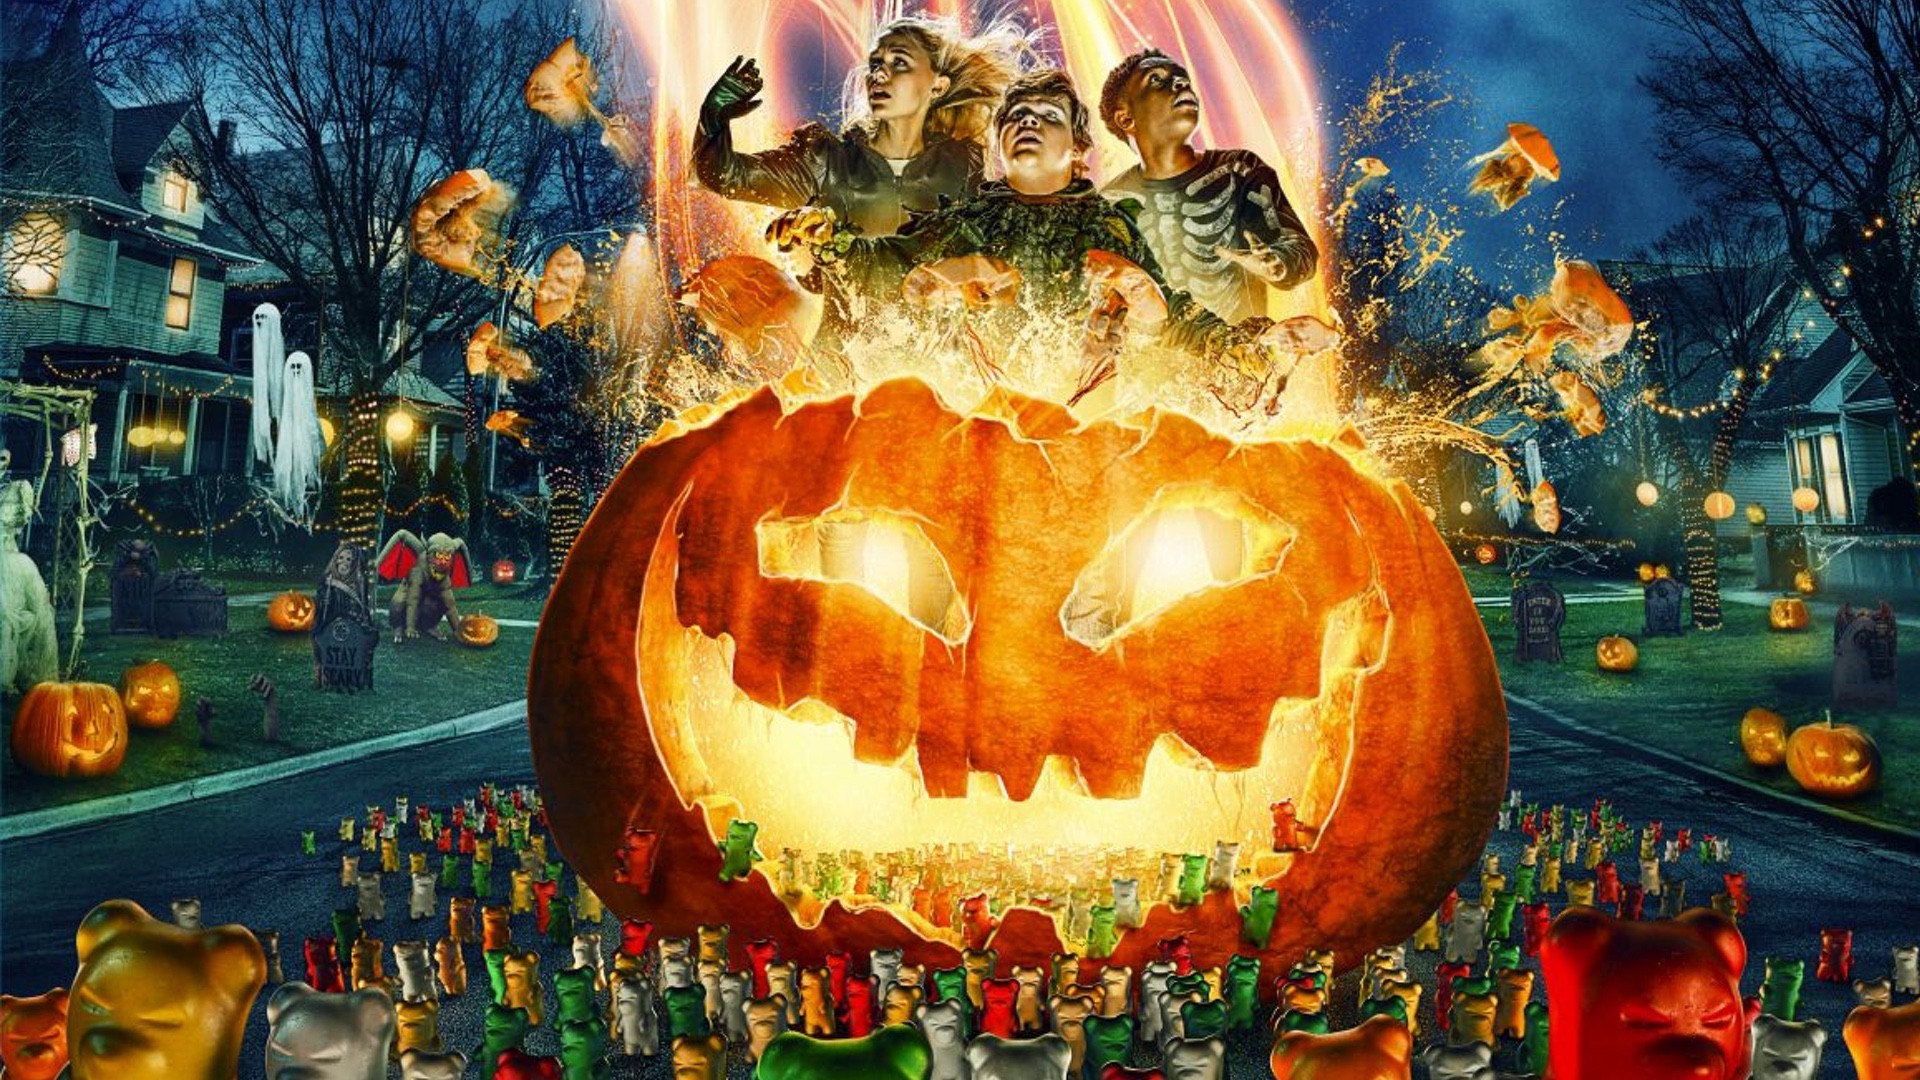 Halloween Netflix  10 Filmes para Assistir nesse Dia das Bruxas